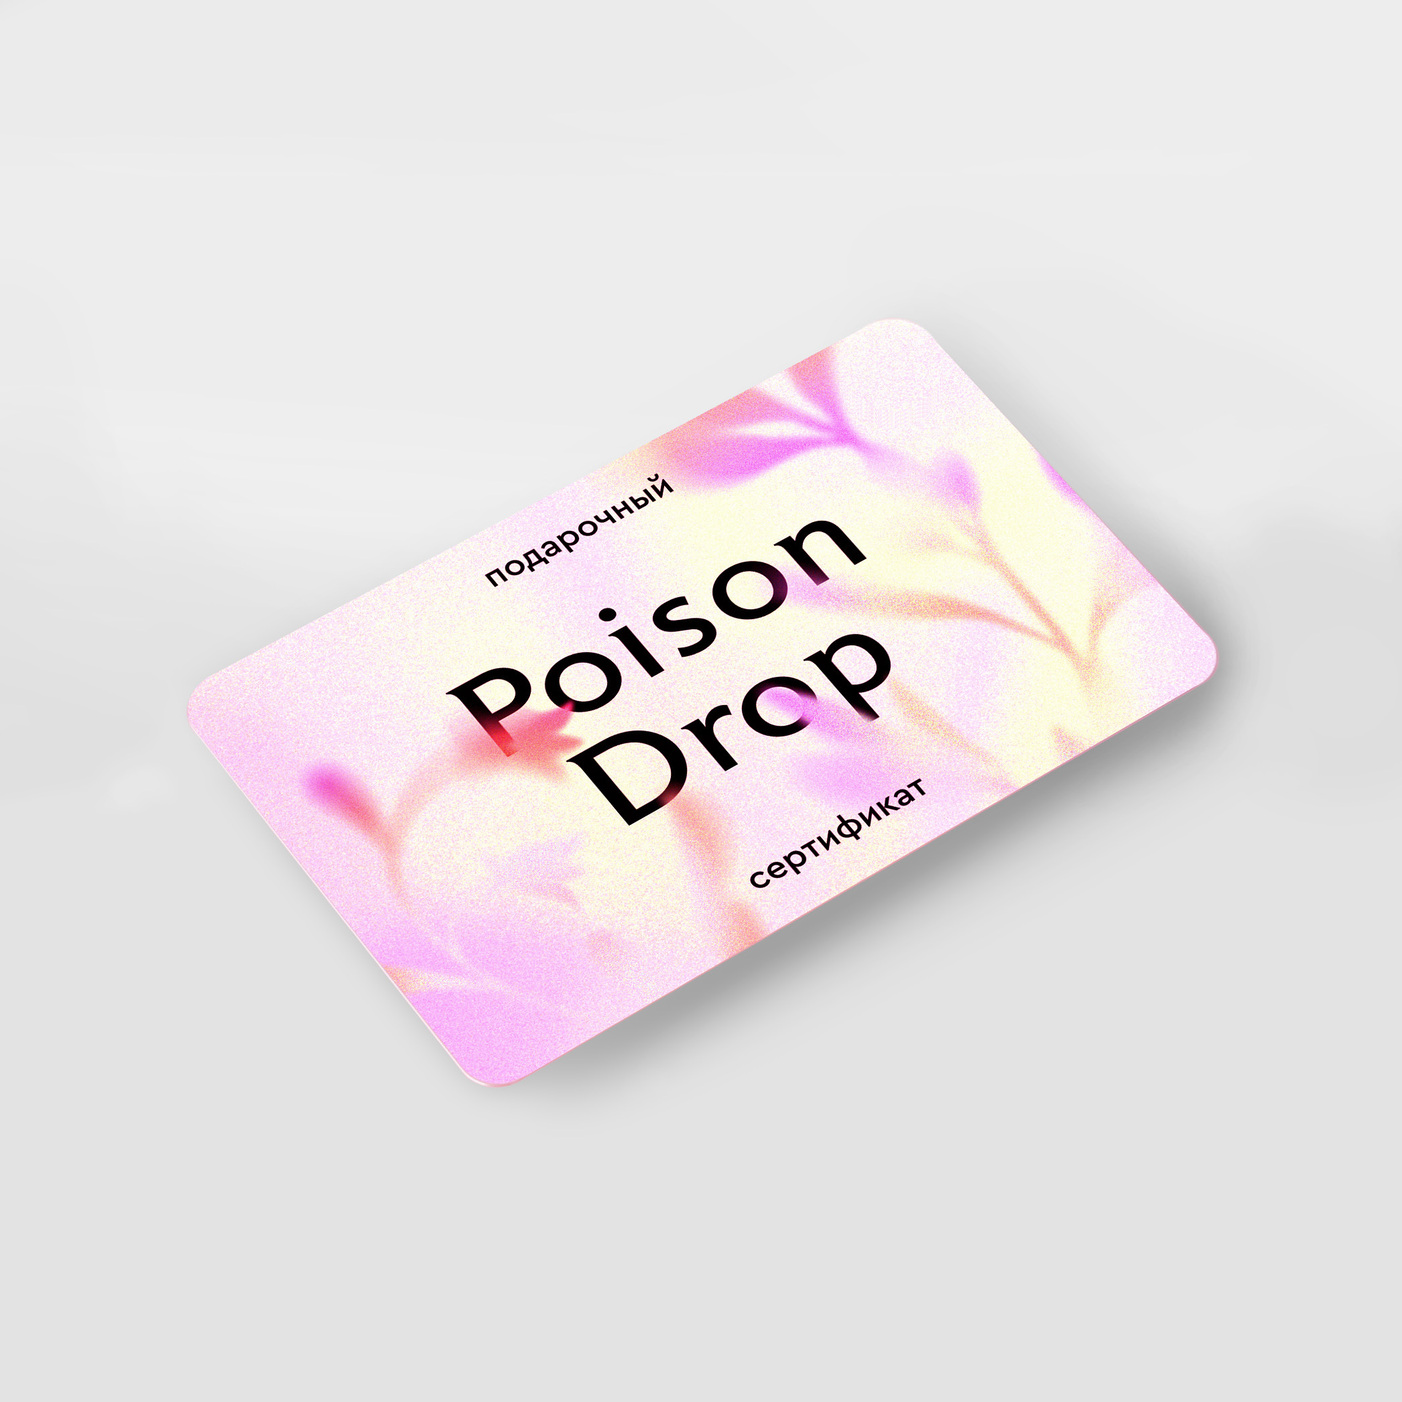 Poison Drop упаковка. Сертификат Poison. Сертификат Пойзон дроп. Poison Drop подарочная упаковка.